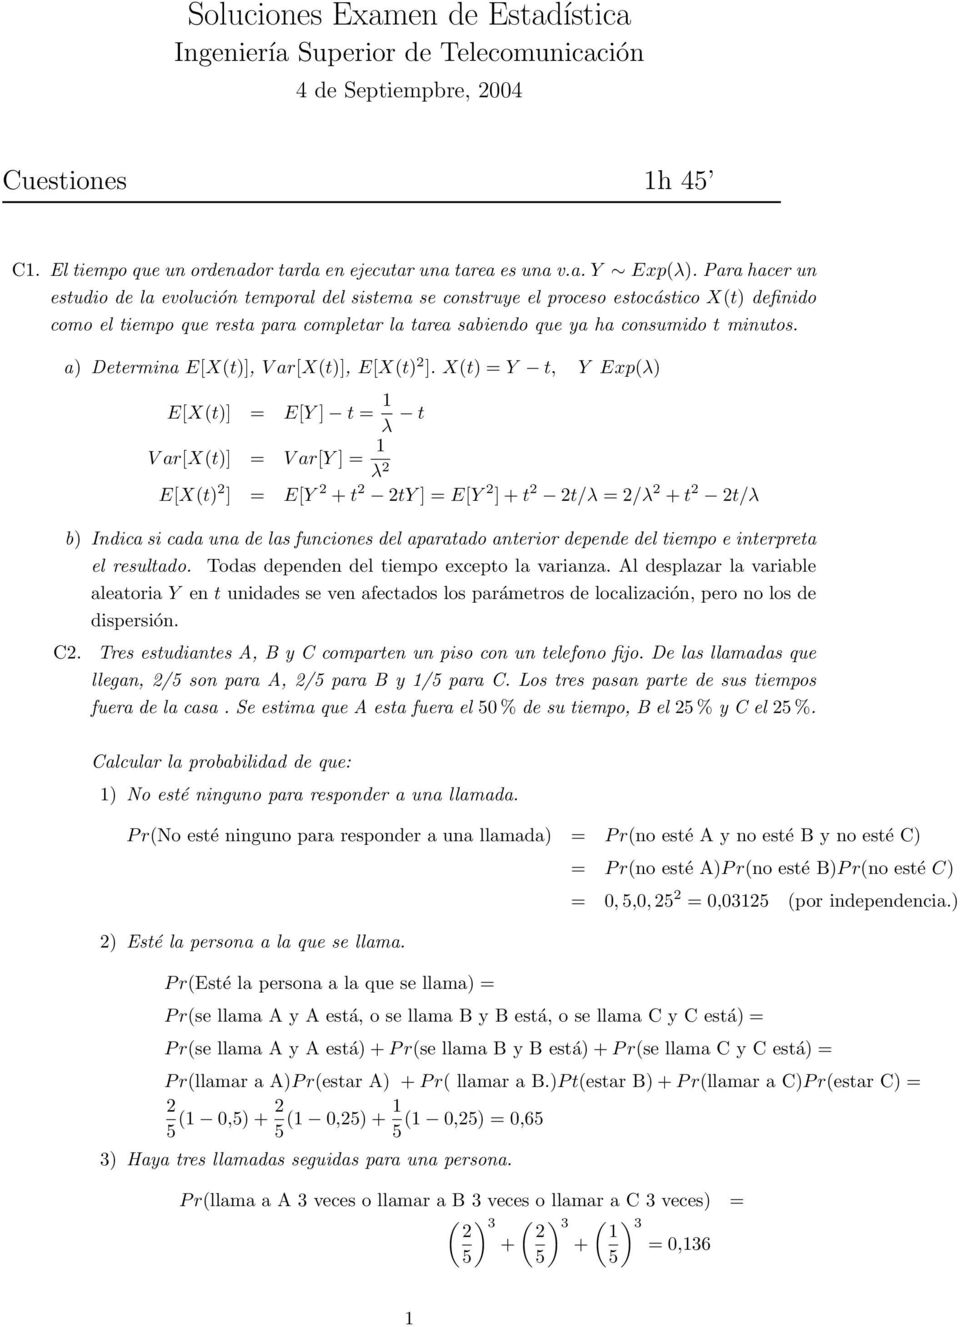 a) Determina E[Xt)], V ar[xt)], E[Xt) ].